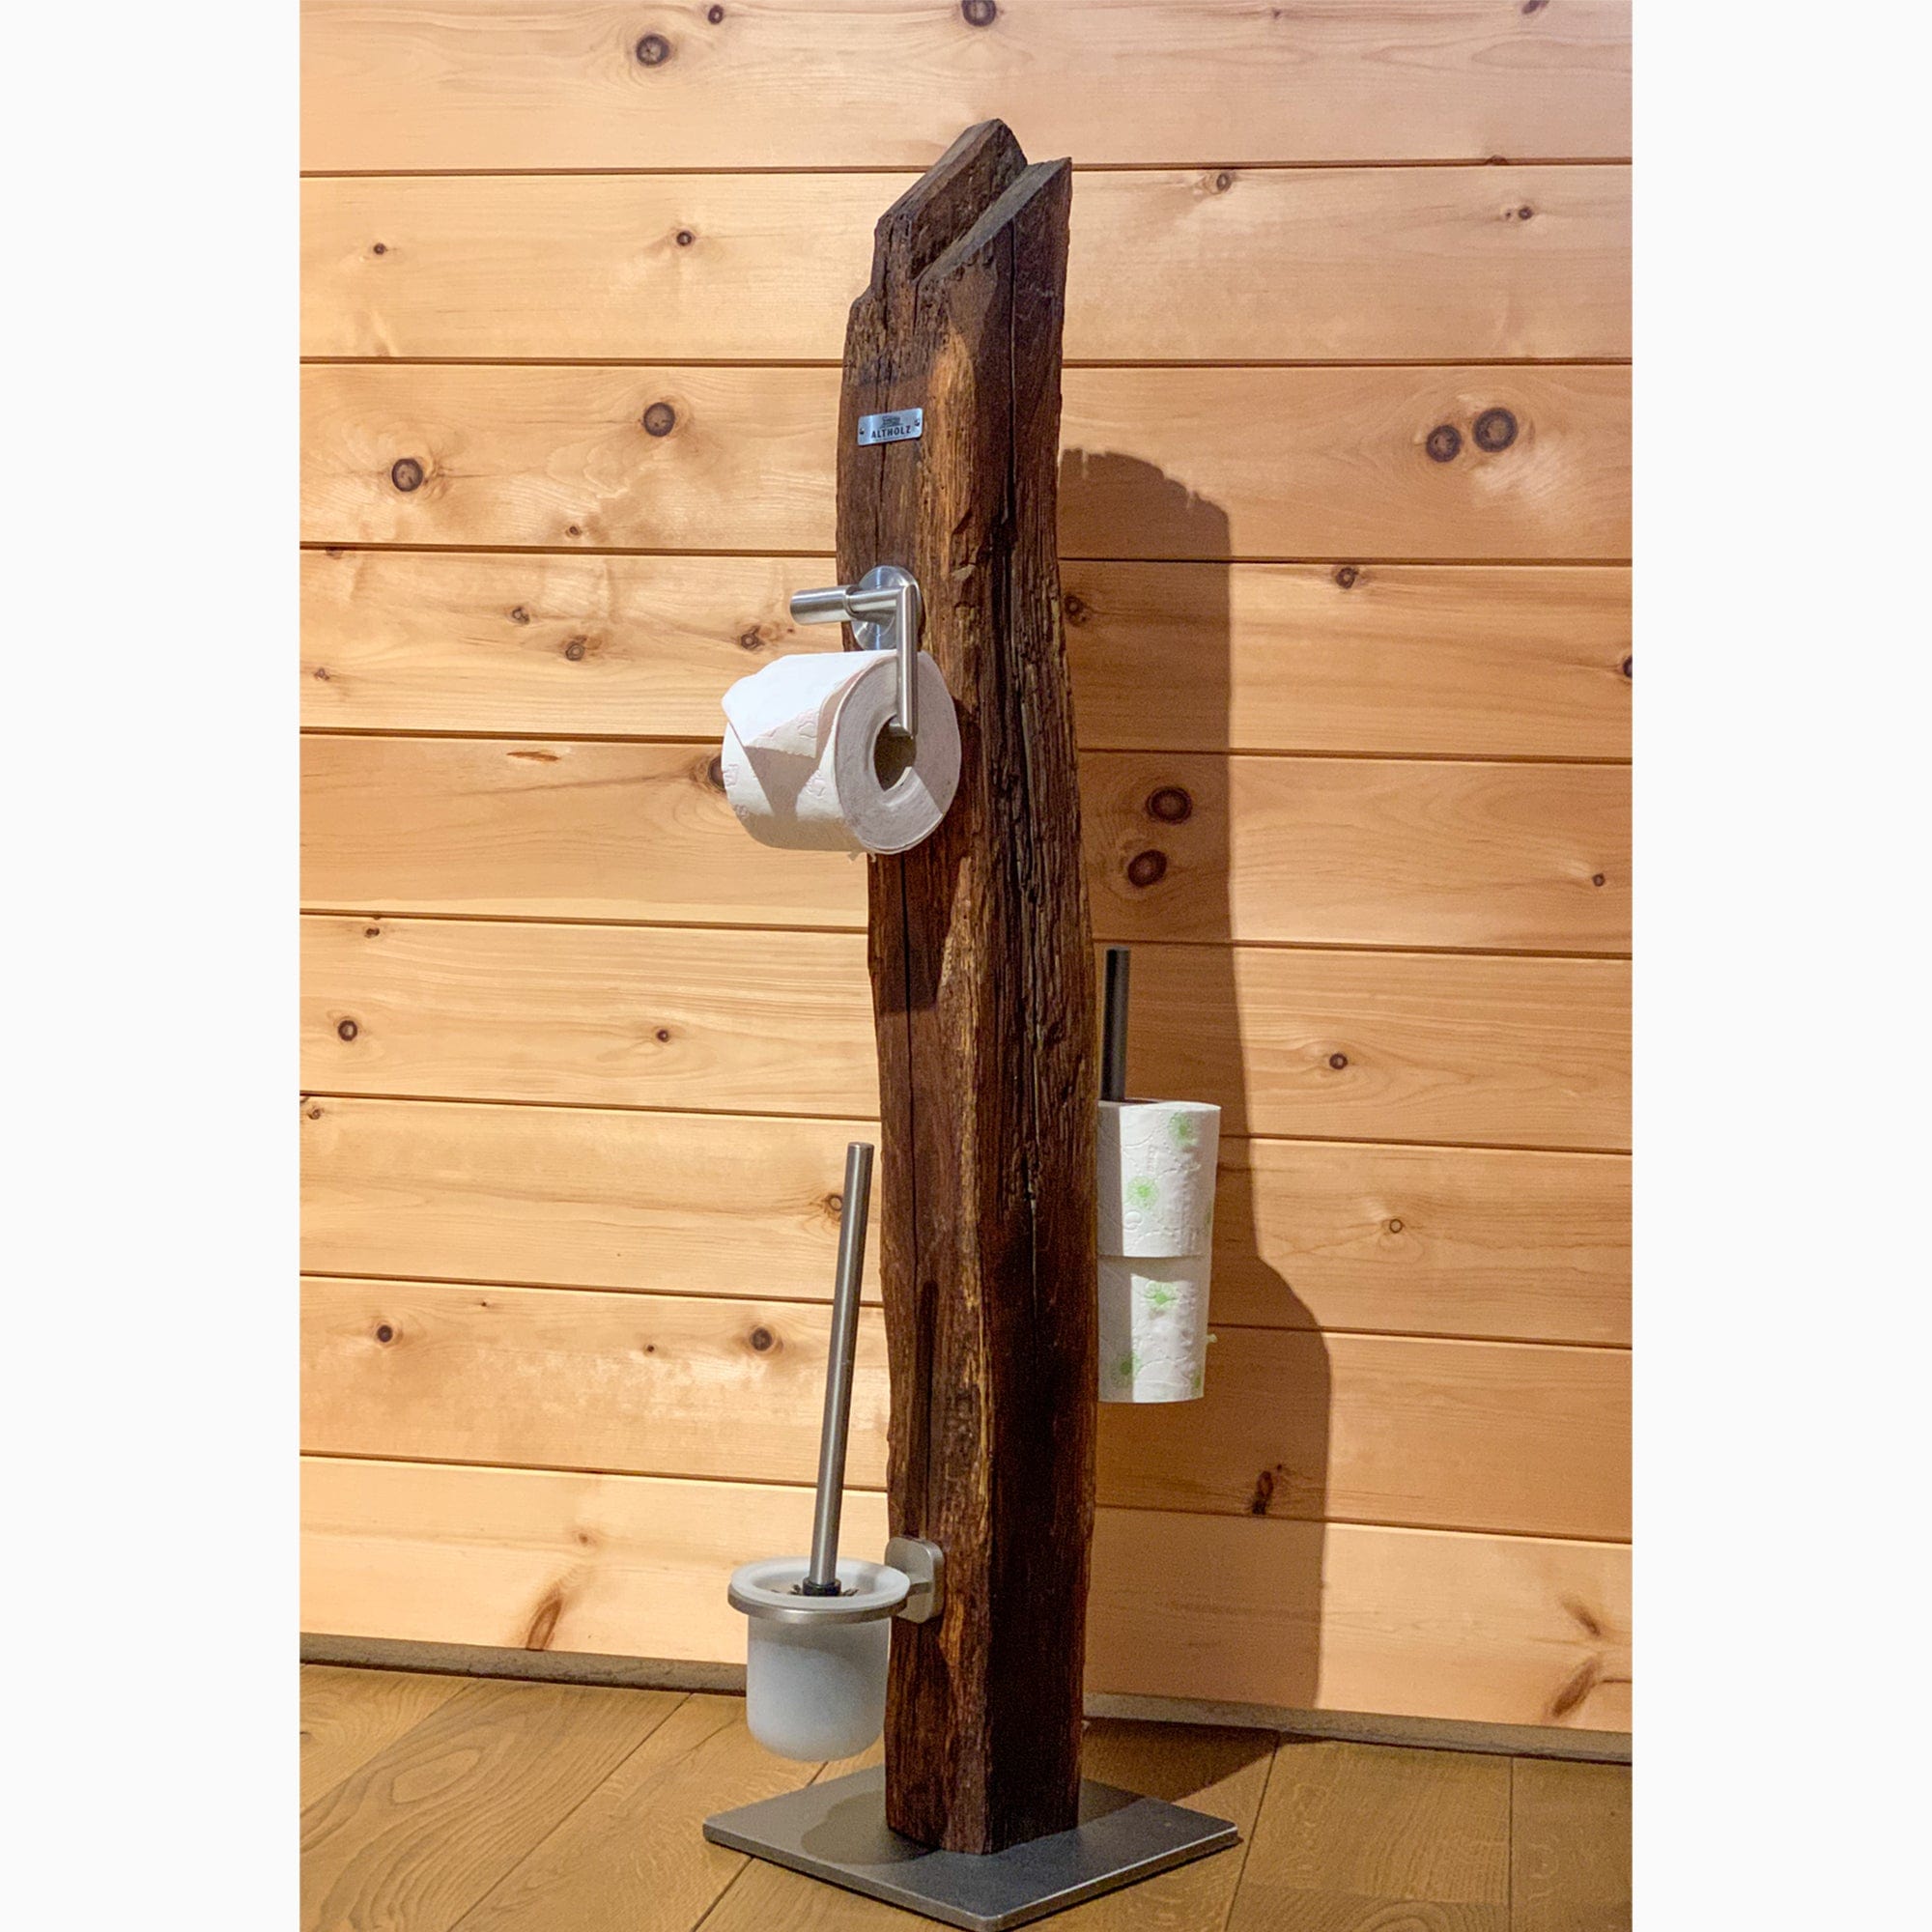 Accessorio per Toilette in legno antico - versatile - fatto a mano